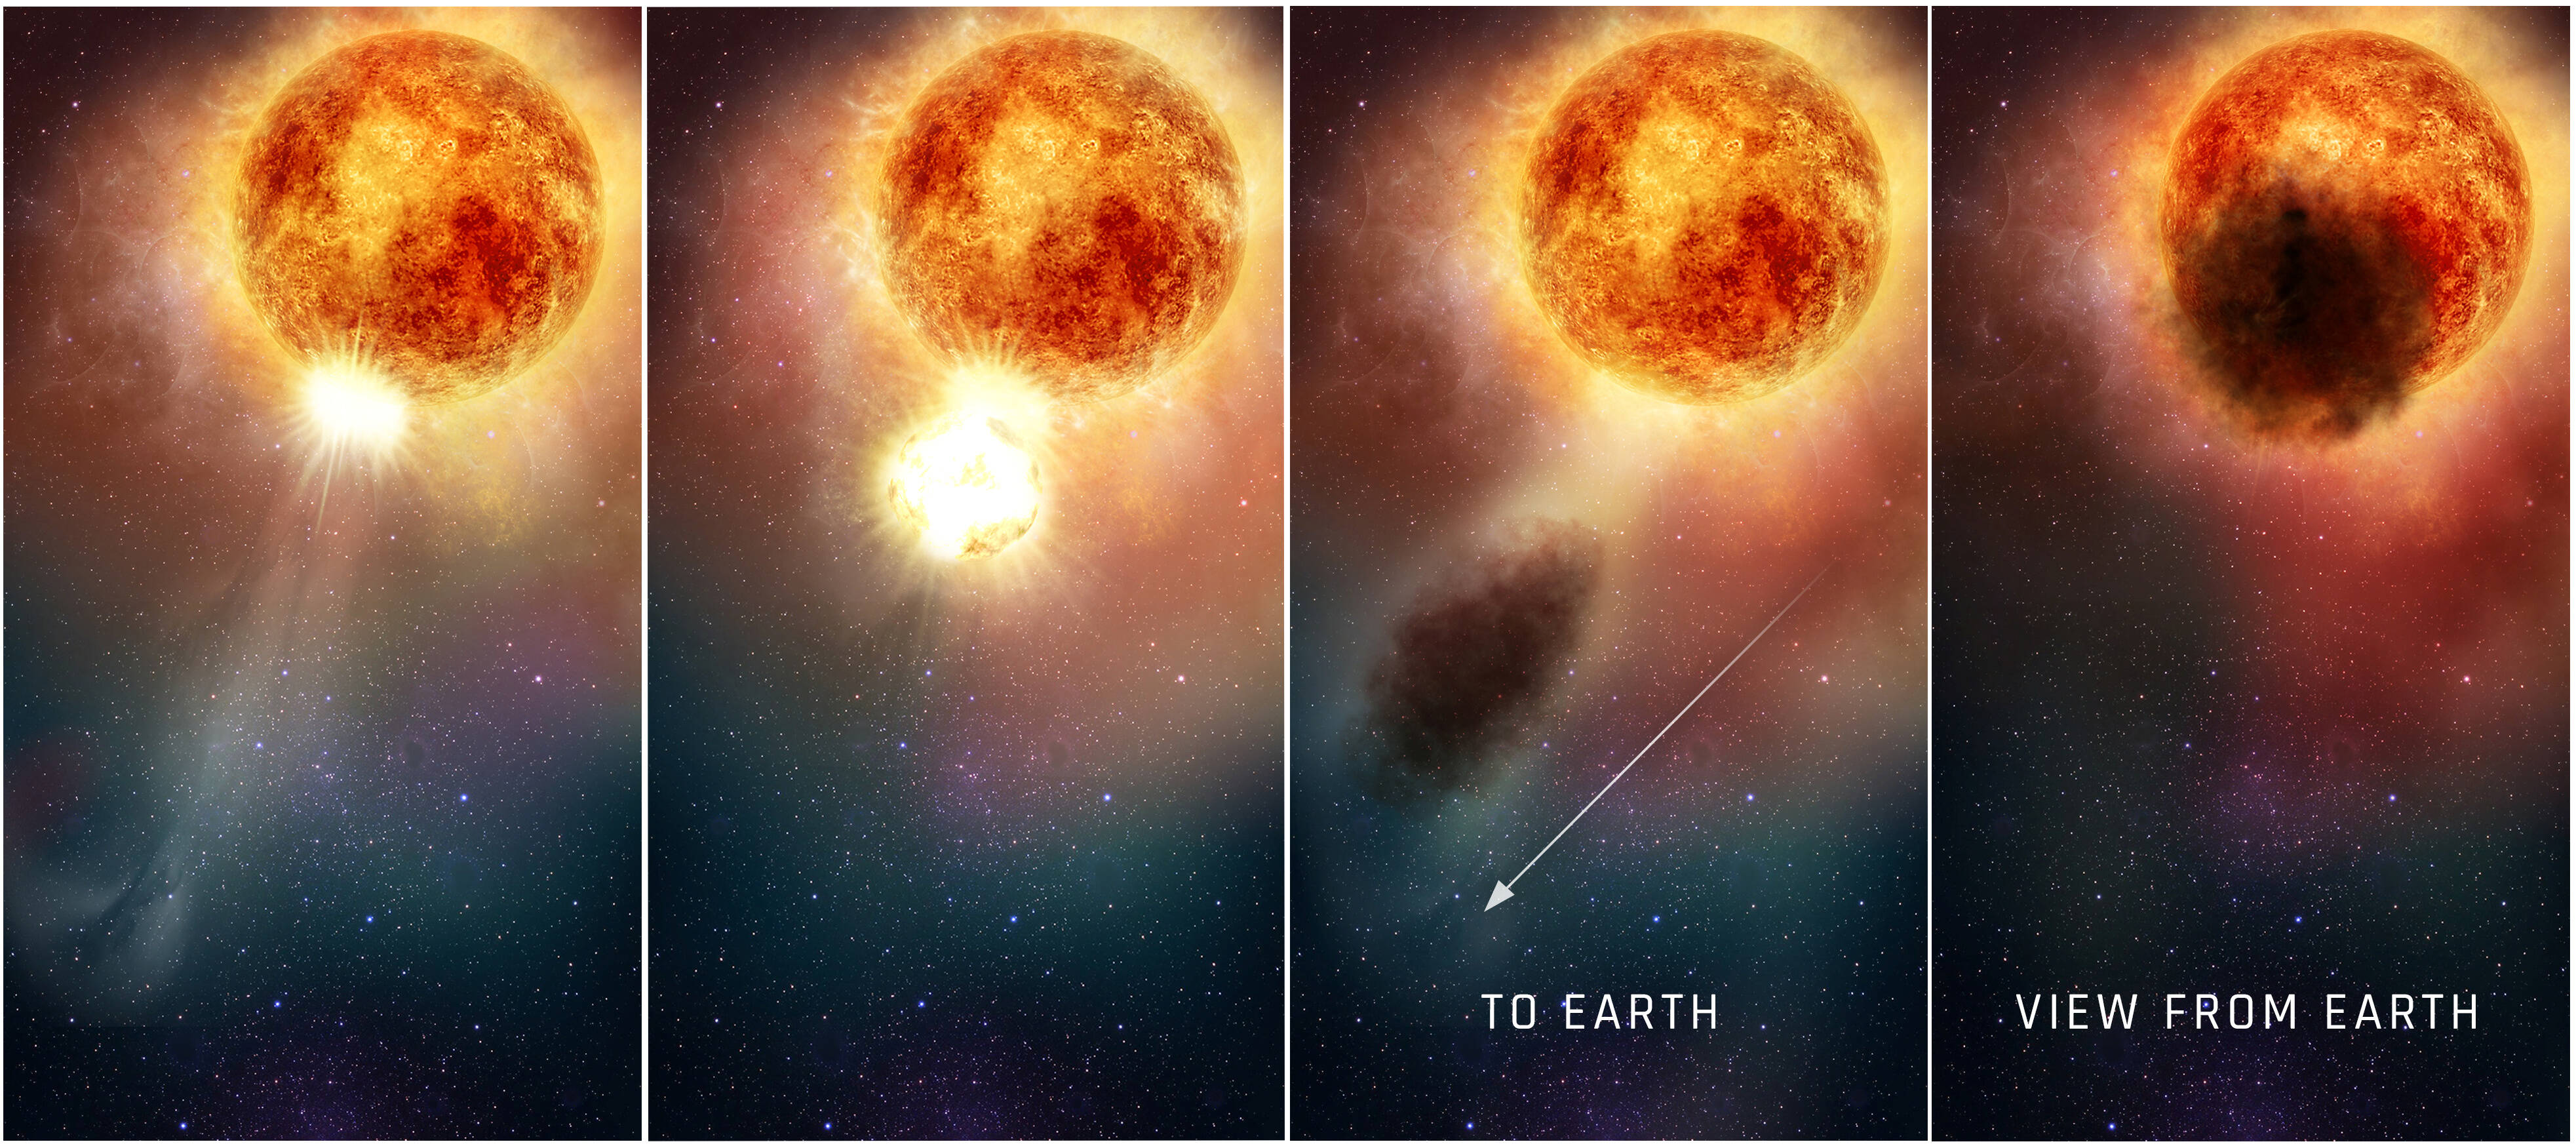 Cette méga-explosion explique pourquoi cette grosse étoile était moins visible depuis la Terre